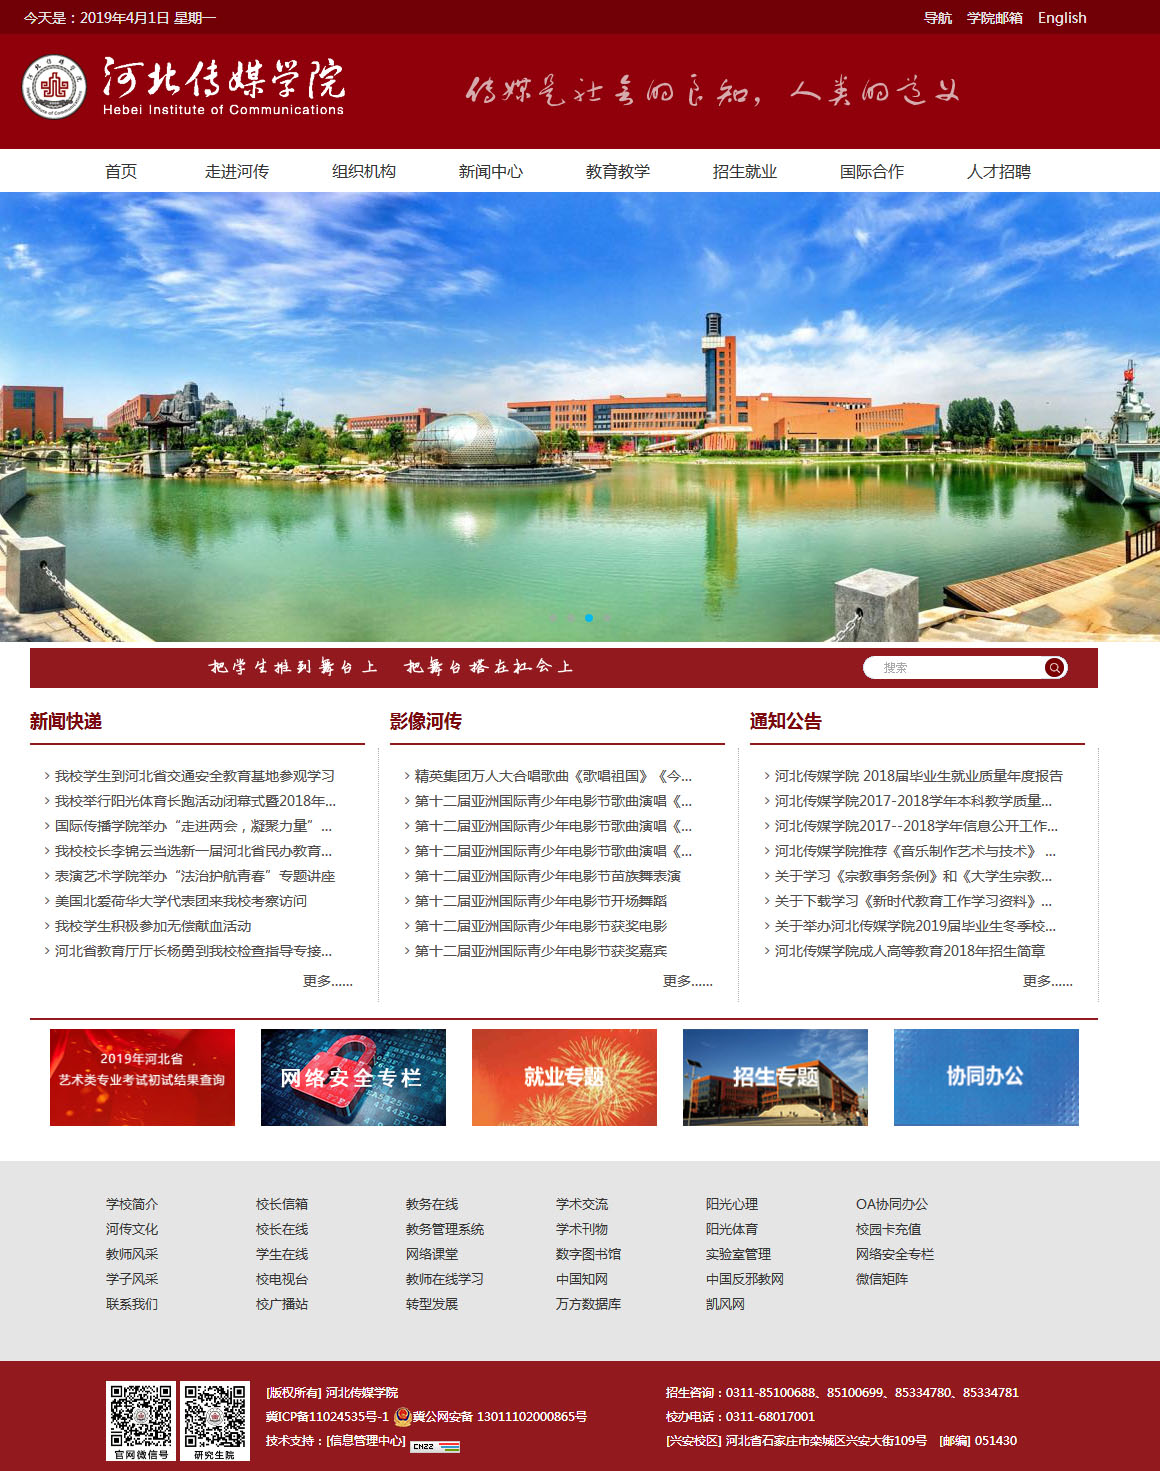 河北传媒学院 文化 教育 学校 石家庄网站制作 石家庄网站建设 网站设计开发 